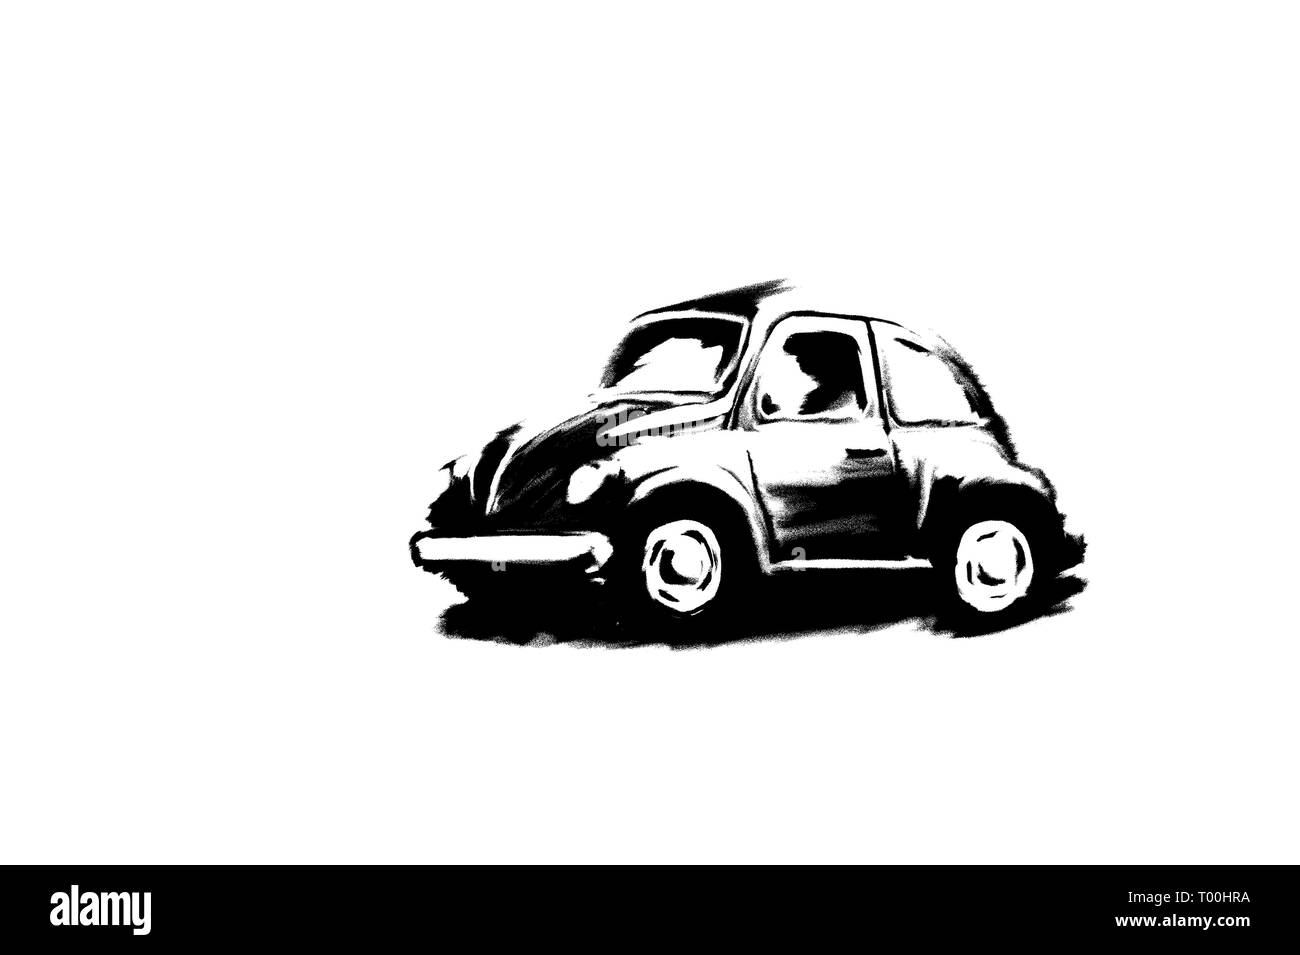 Petite voiture illustration avec effet theresold sur fond blanc Banque D'Images